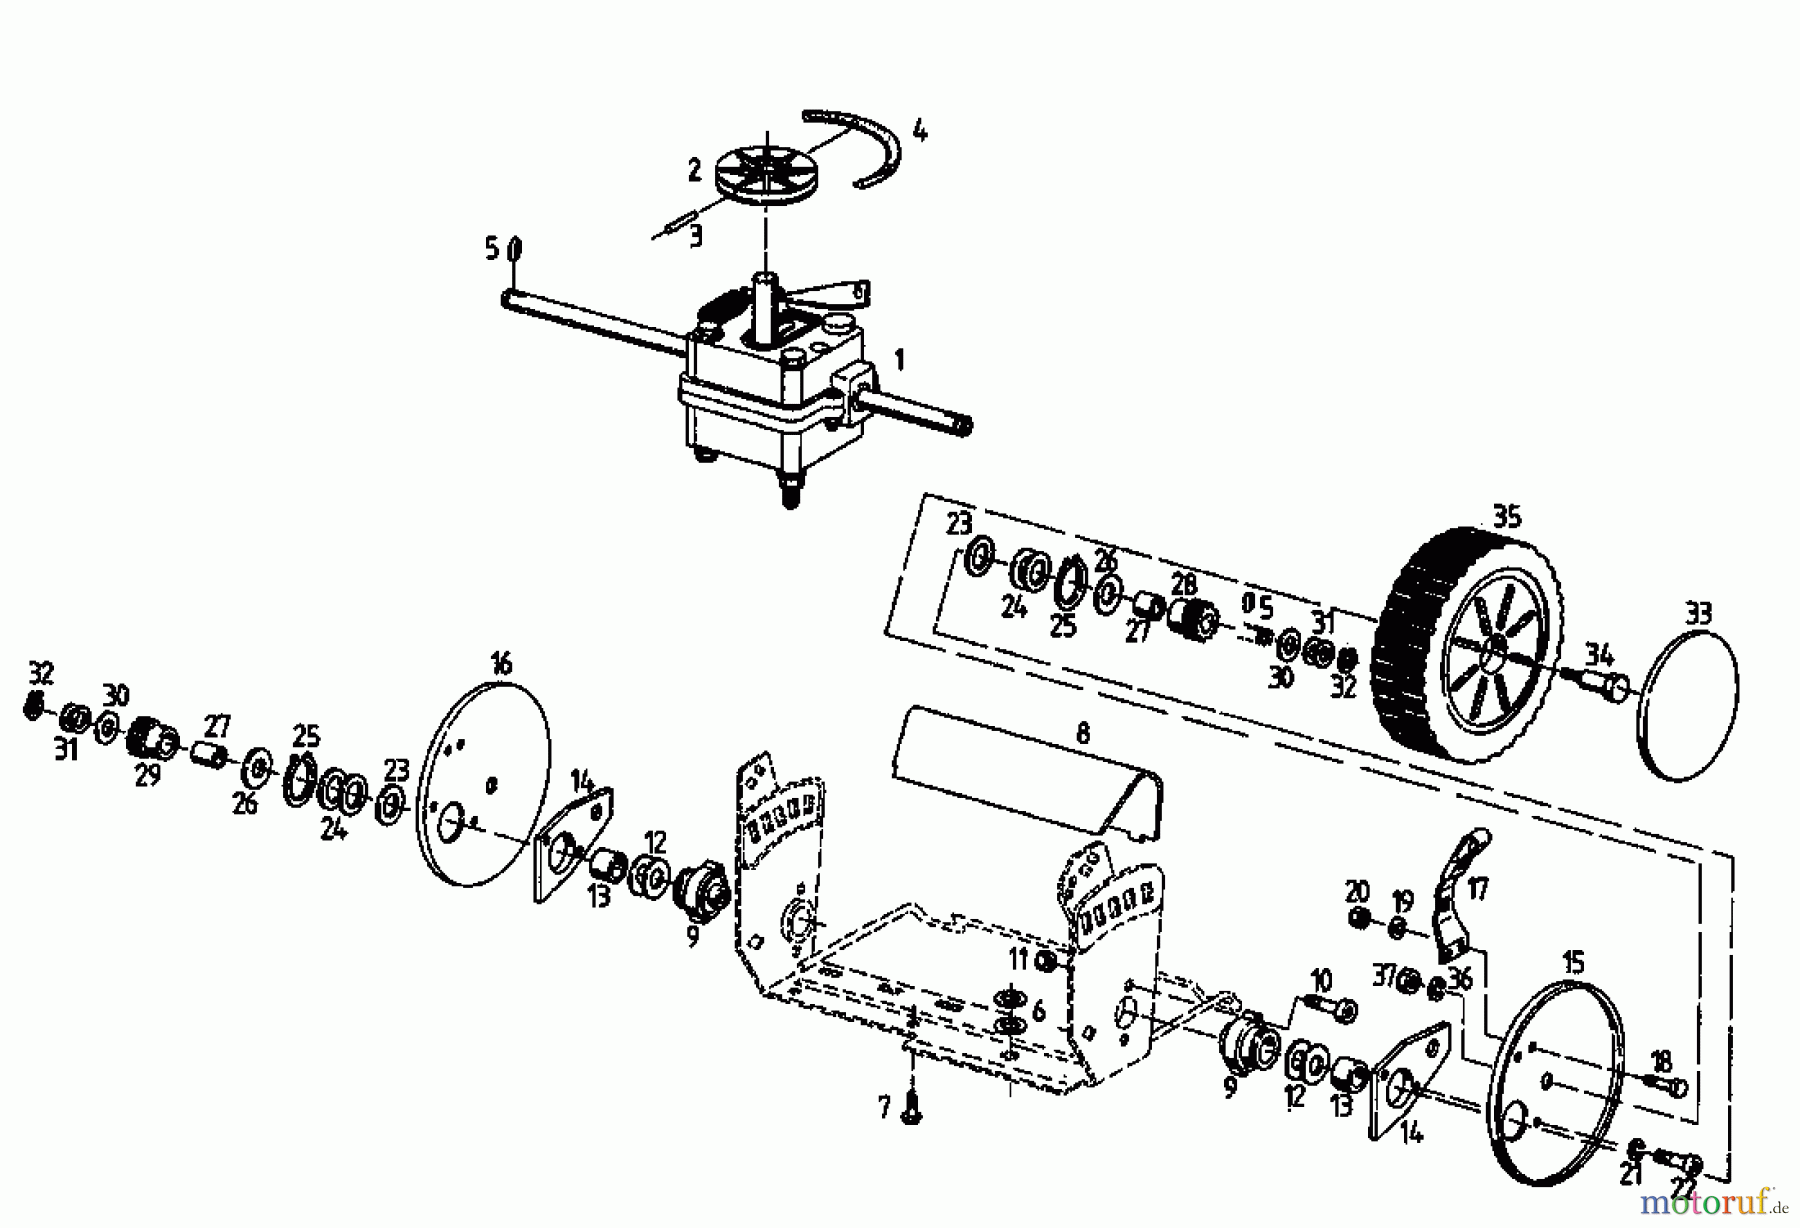  Diana Motormäher mit Antrieb 45 BA 04025.04  (1995) Getriebe, Räder, Schnitthöhenverstellung